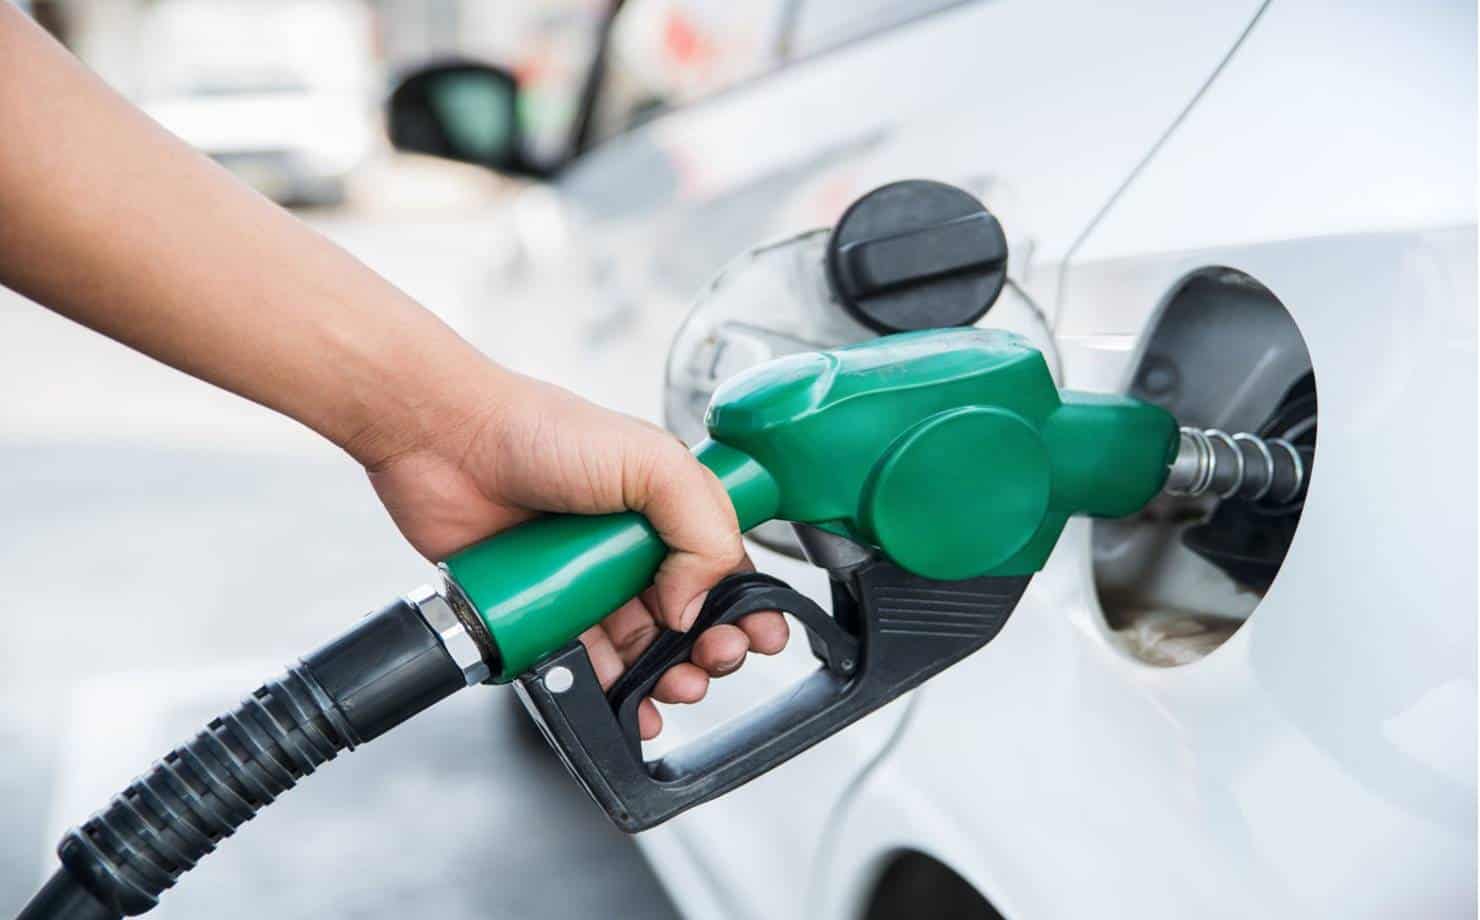 Gasolina Cara: Confira 3 dicas para economizar na hora de abastecer